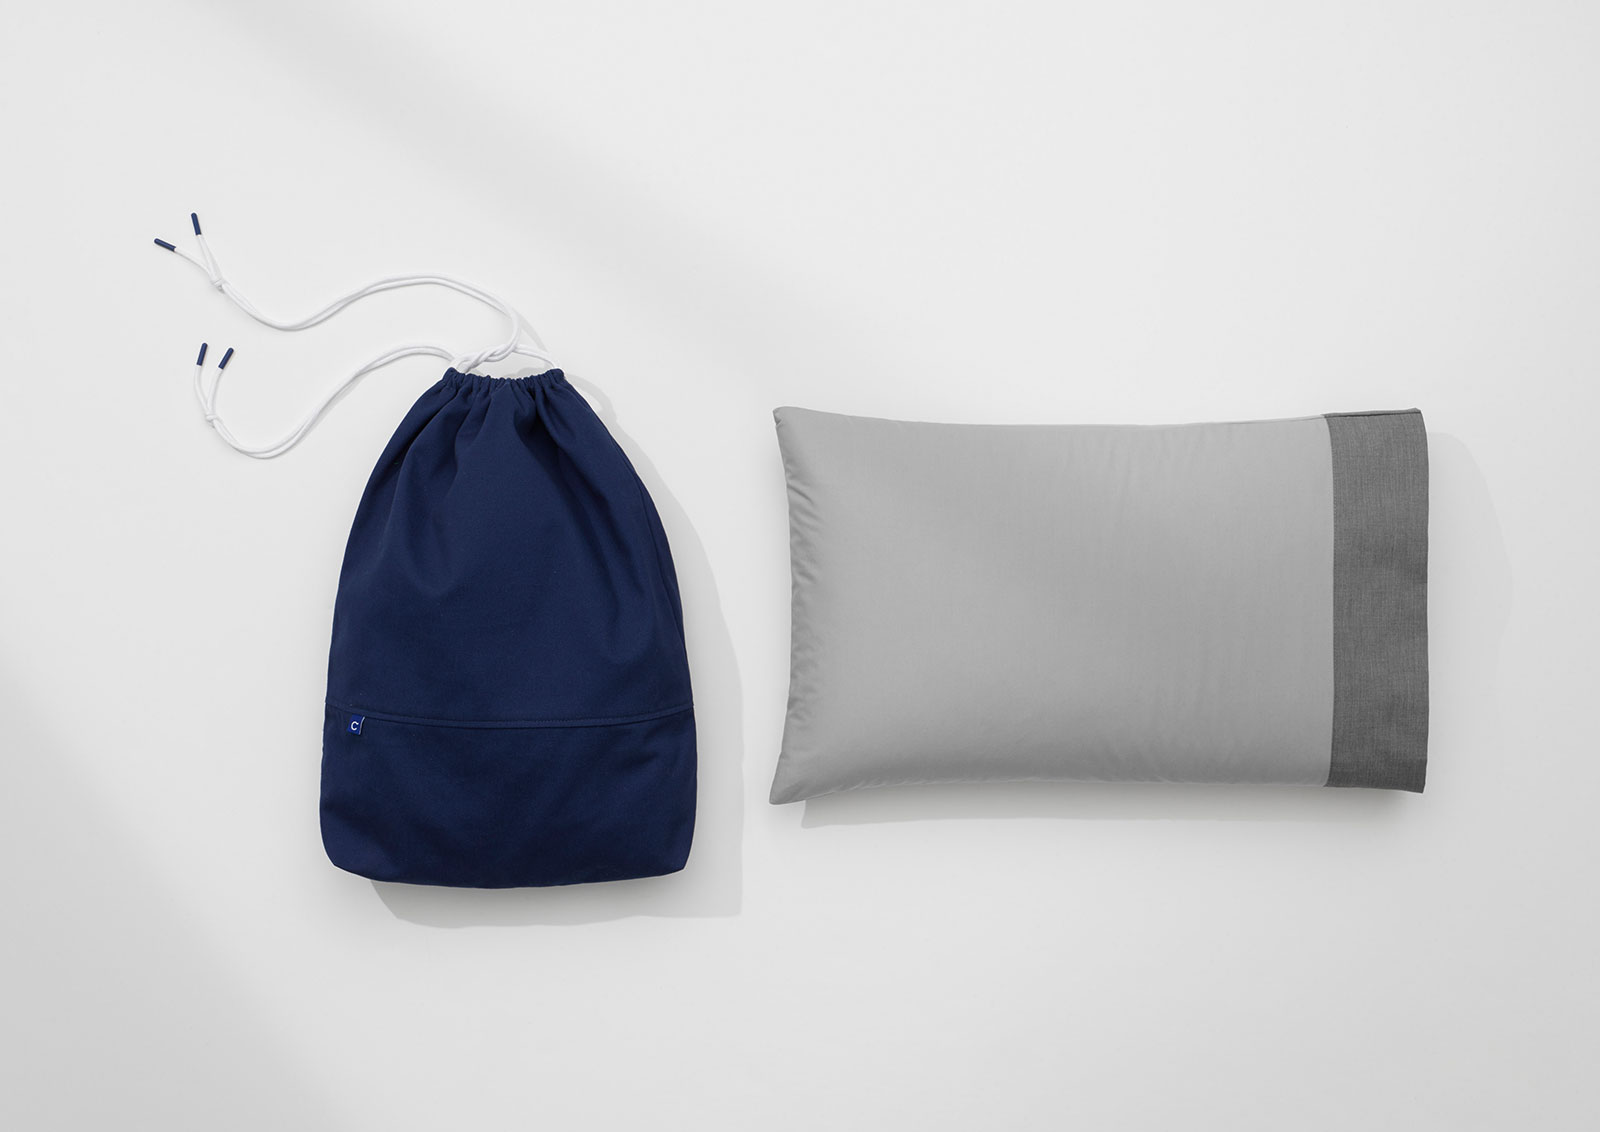 Nap Pillow: Small Travel Pillow | Casper®